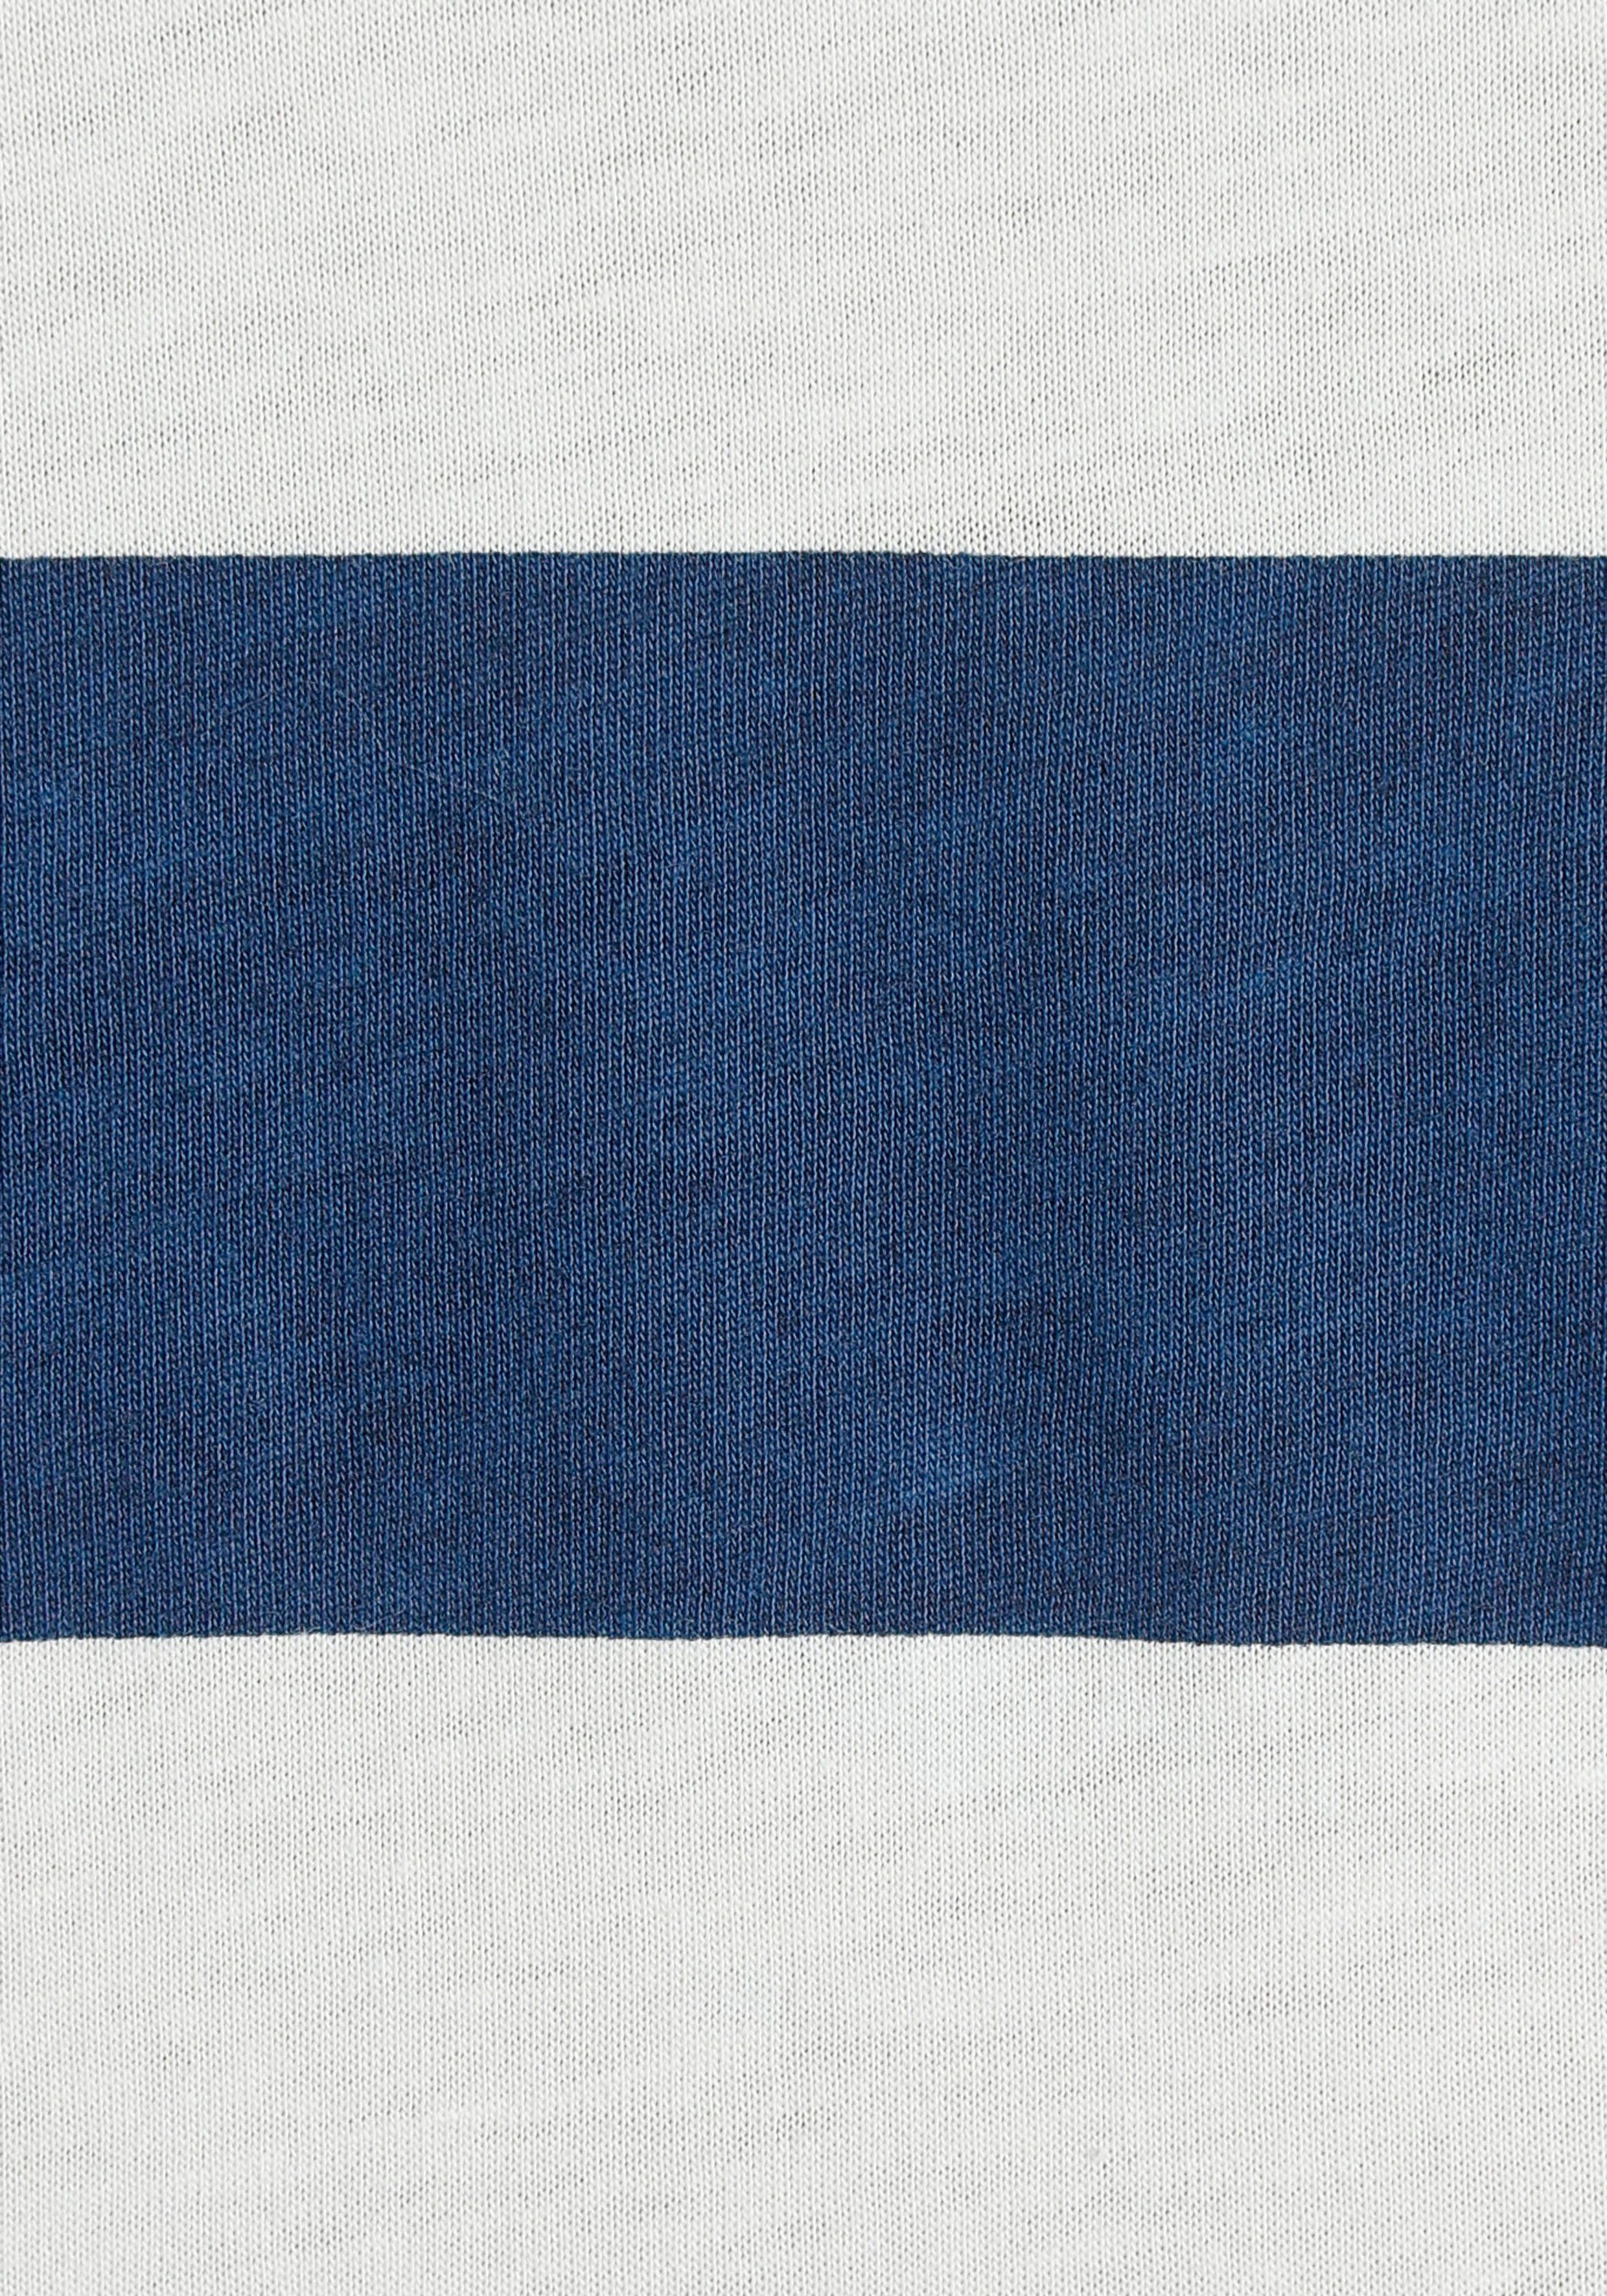 s.Oliver Longsleeve in schönem Streifenmuster dunkelblau-weiß-gestreift